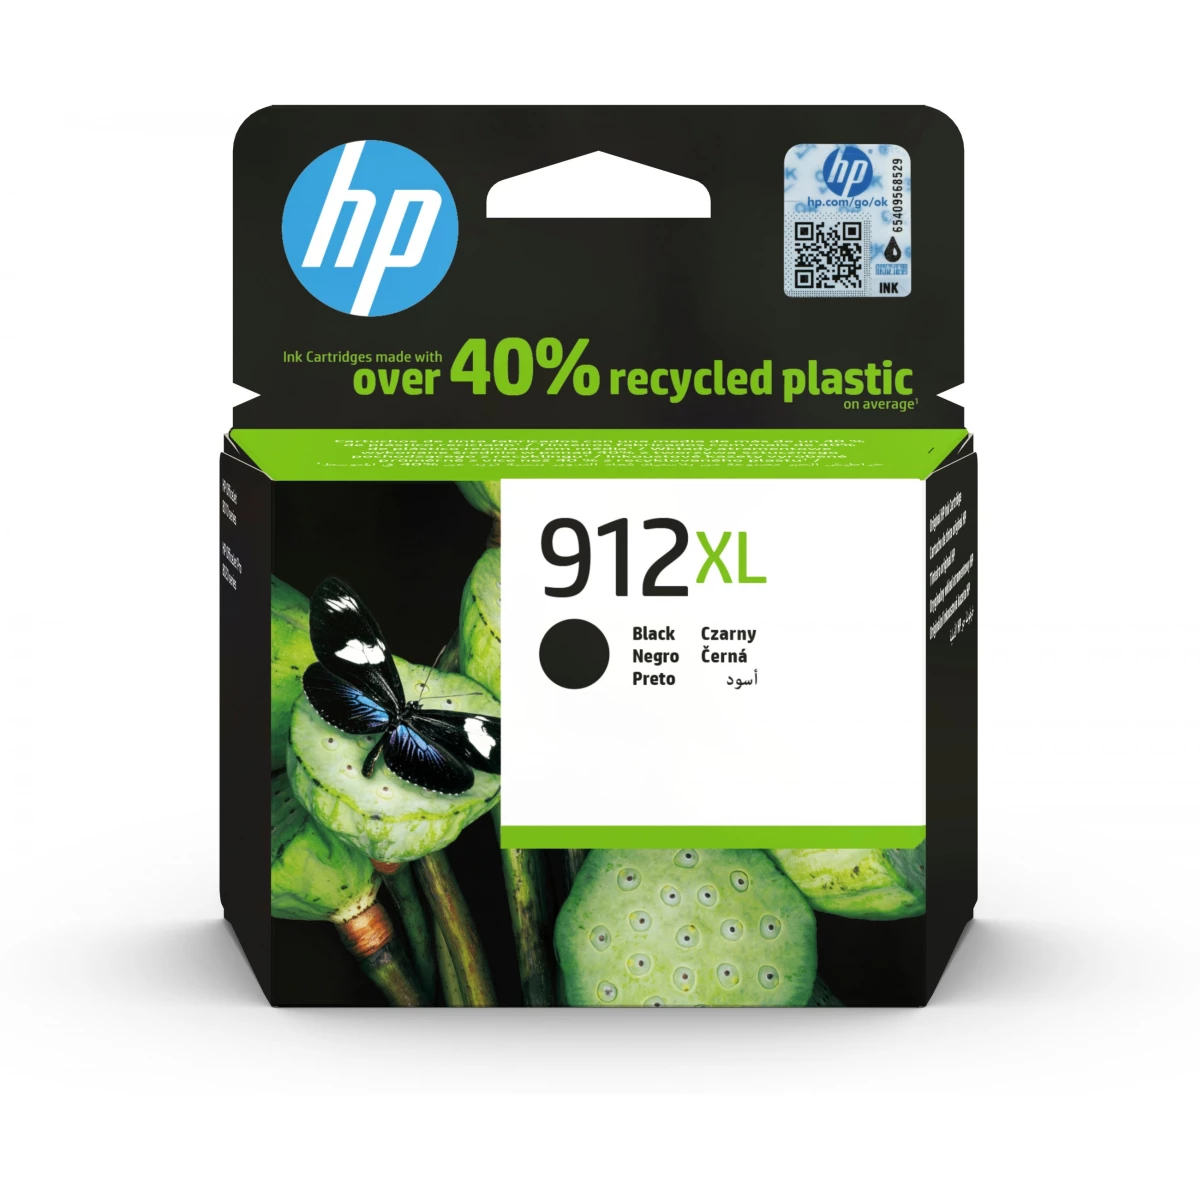 HP Druckerpatrone '912 XL' schwarz 22 ml